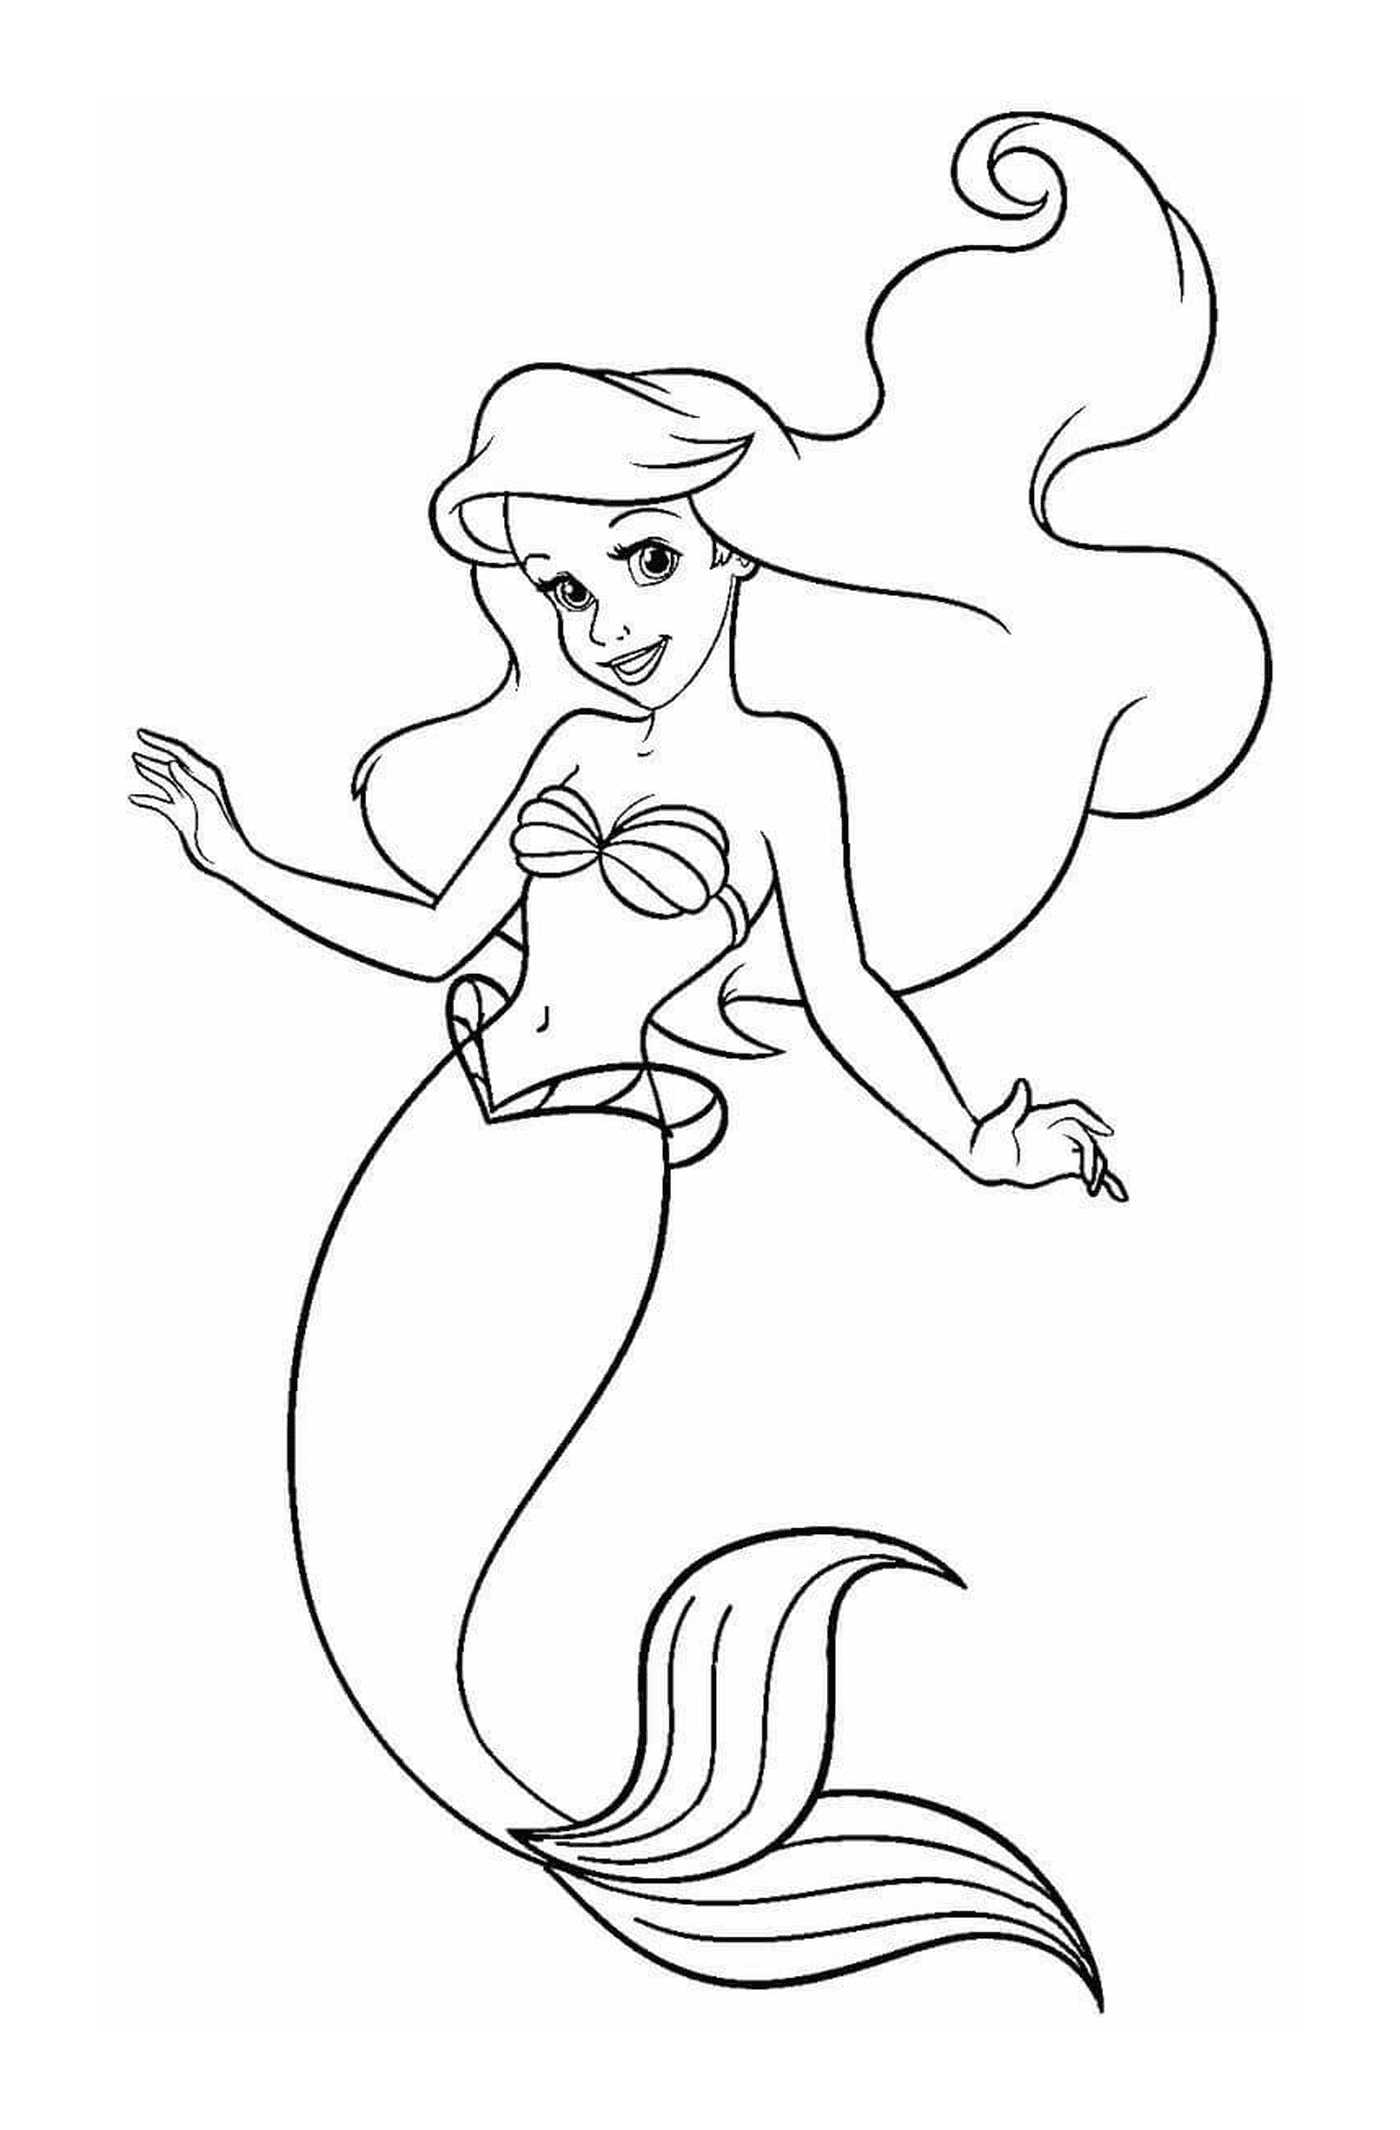  Prinzessin Ariel von der kleinen Meerjungfrau 